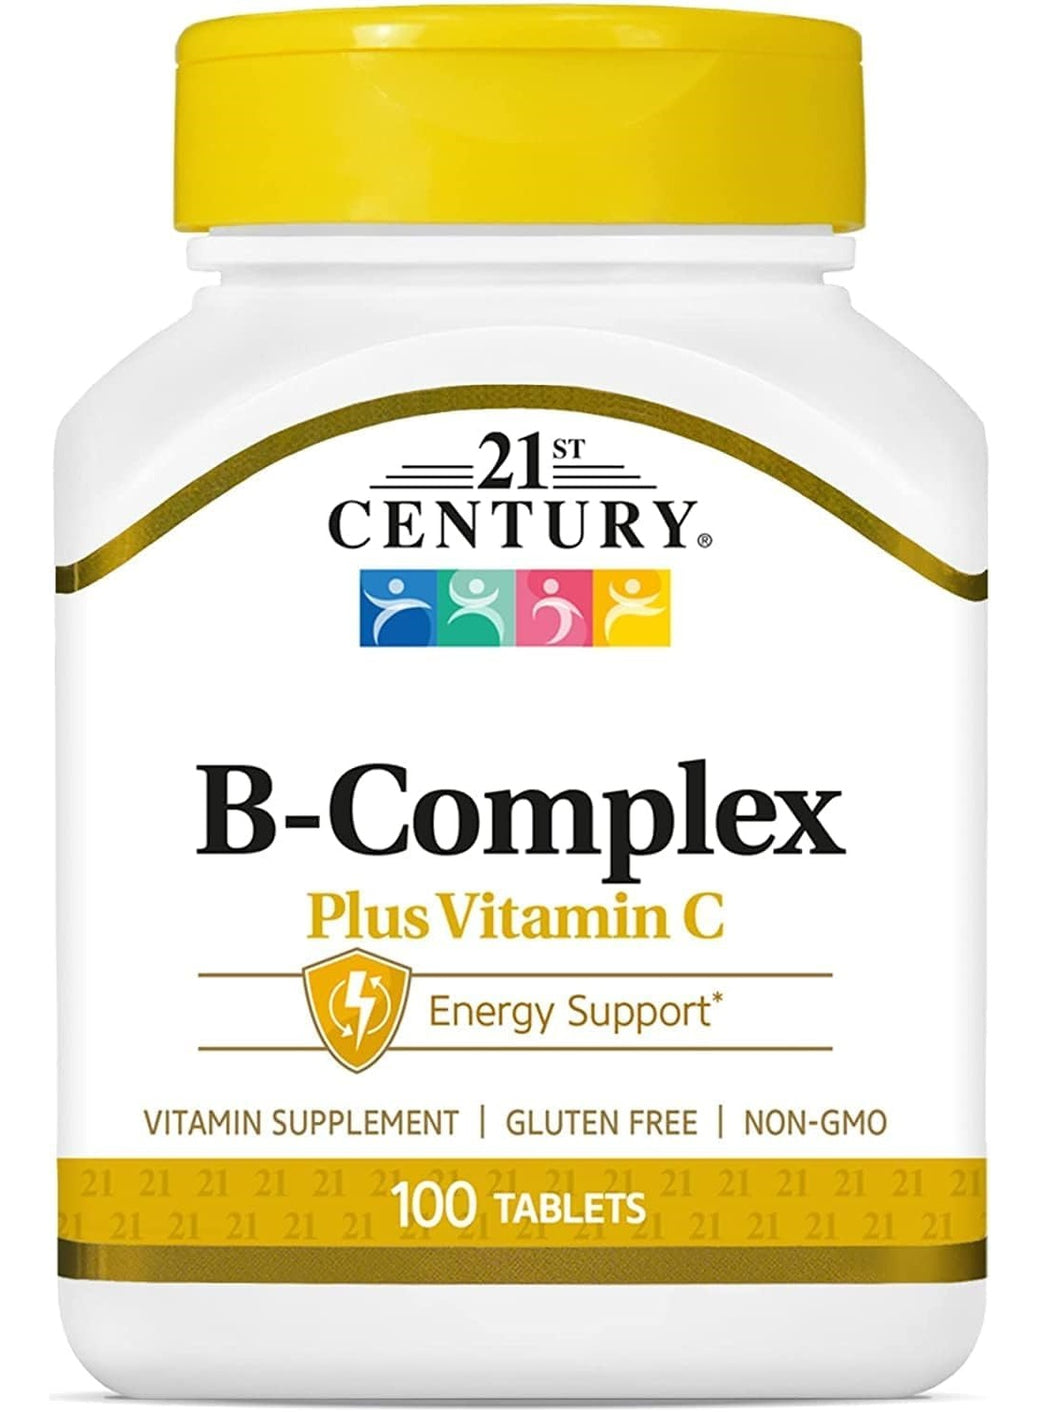 Complejo B, con vitamina C, 21 Century, 100 tabletas